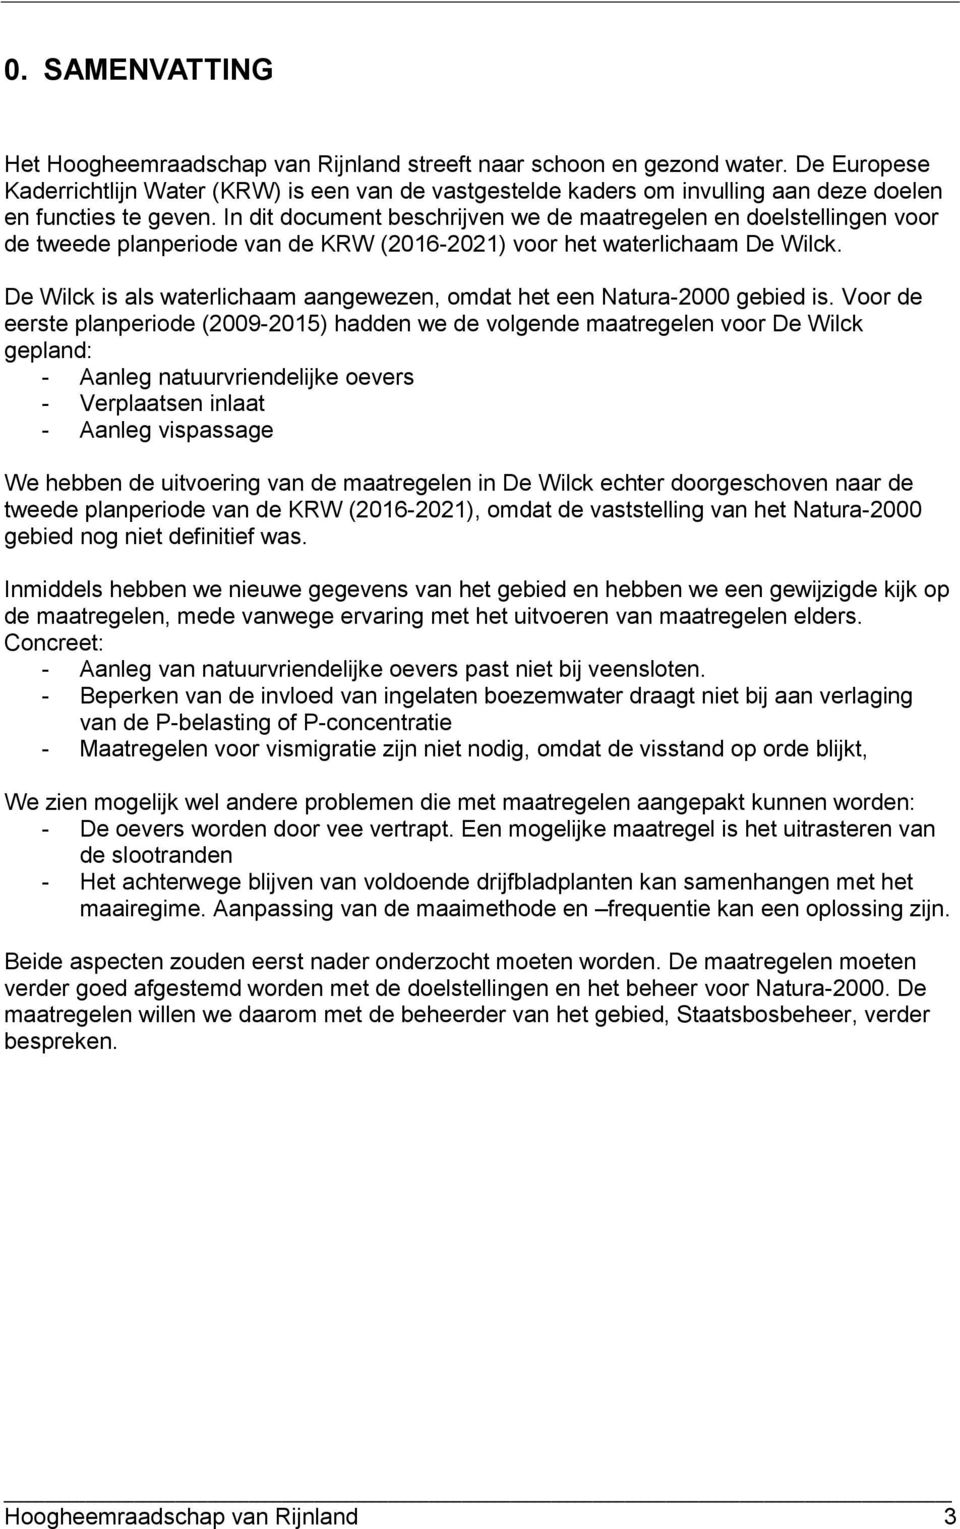 In dit document beschrijven we de maatregelen en doelstellingen voor de tweede planperiode van de KRW (2016-2021) voor het waterlichaam De Wilck.